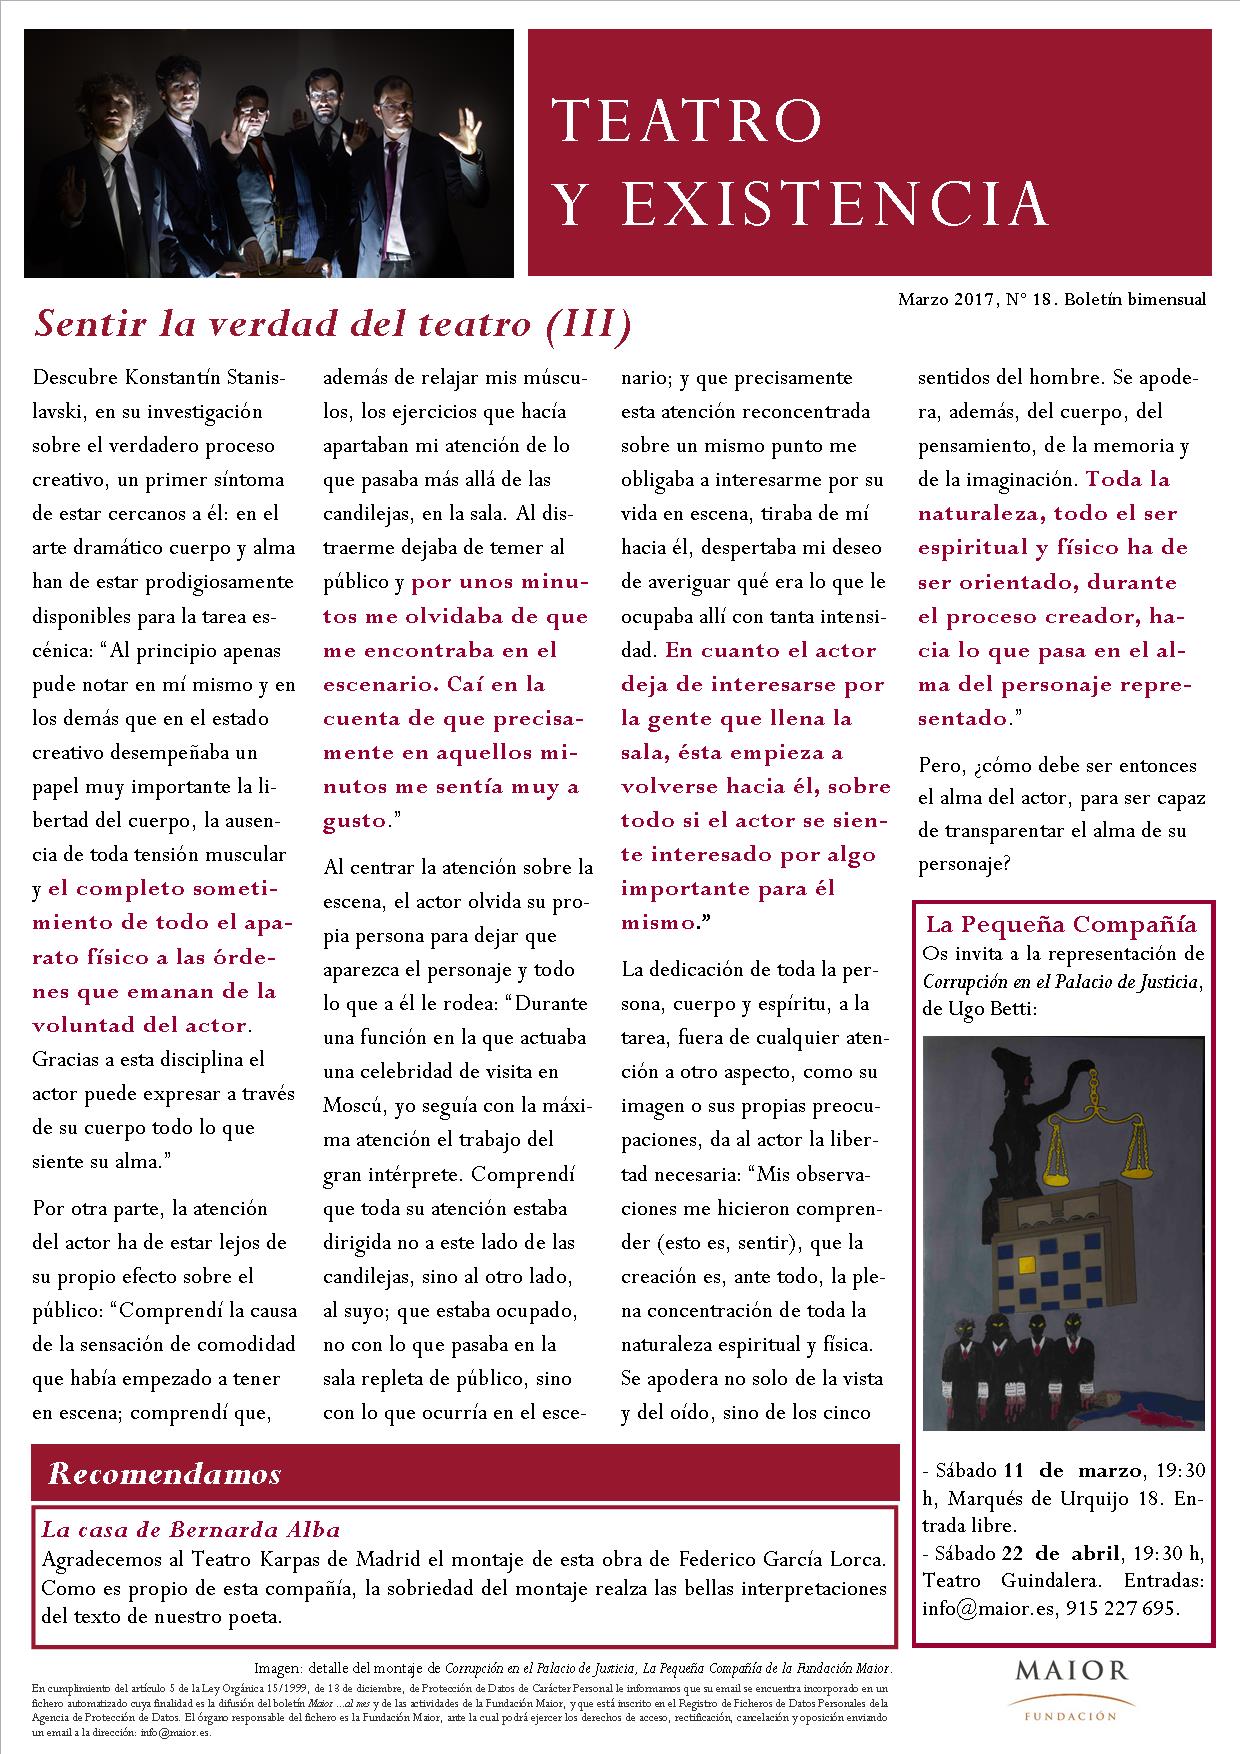 Boletín de Teatro y Existencia de La Pequeña Compañía de la Fundación Maior, con recomendaciones de la cartelera. Edición de Marzo 2017